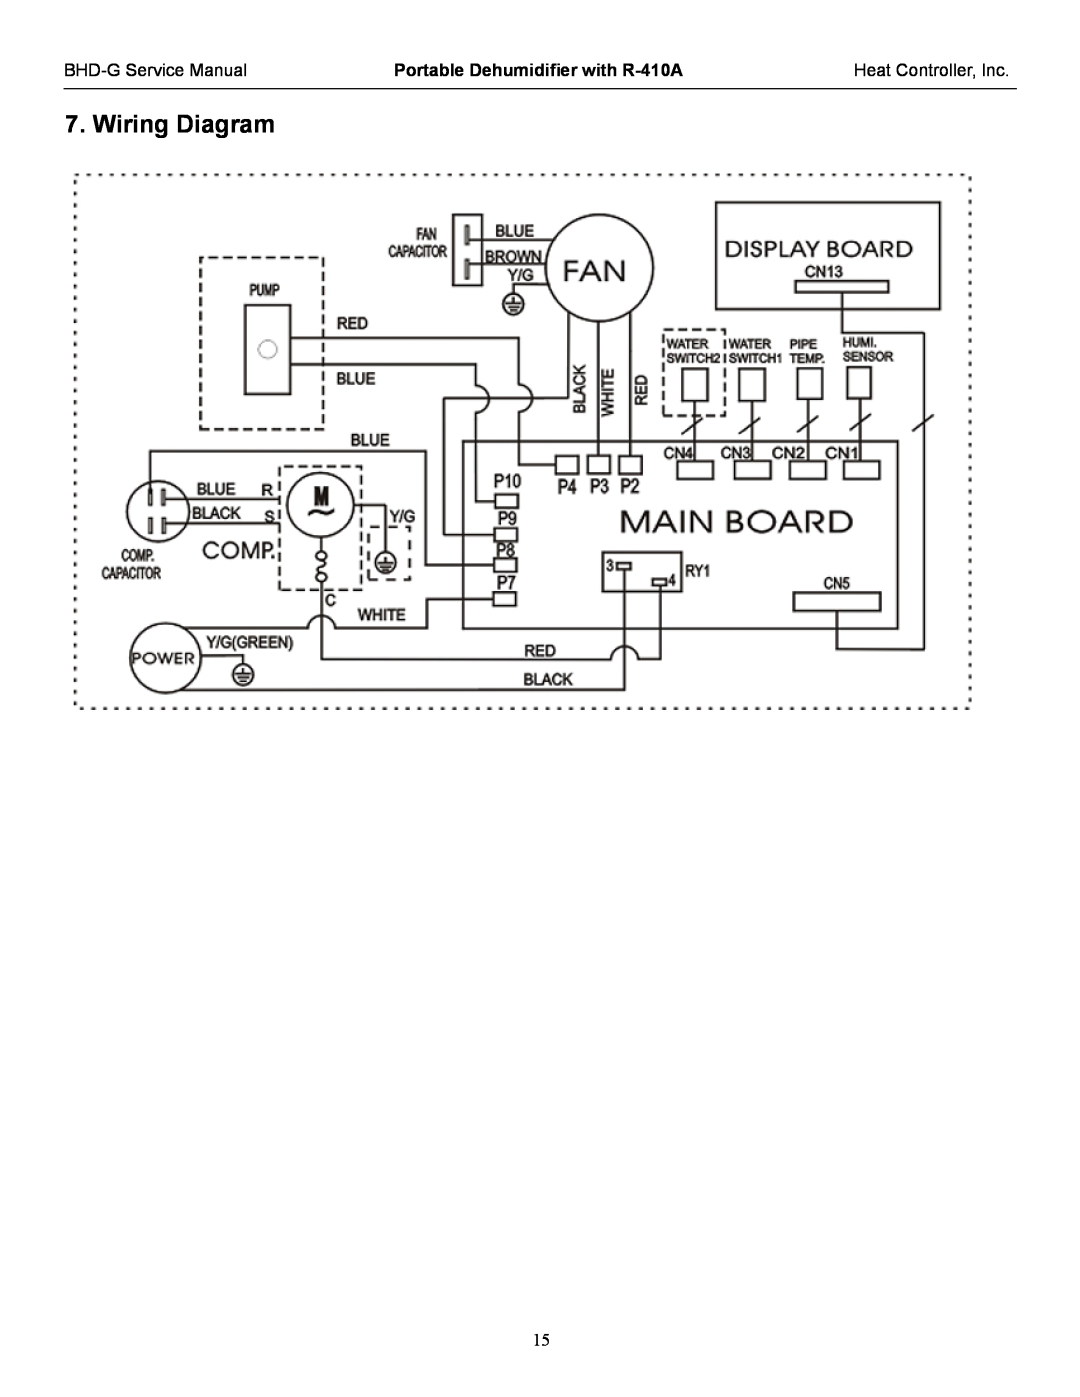 Heat Controller BHD-651-G, BHD-501-G, BHD-301-G service manual Wiring Diagram, Portable Dehumidifier with R-410A 